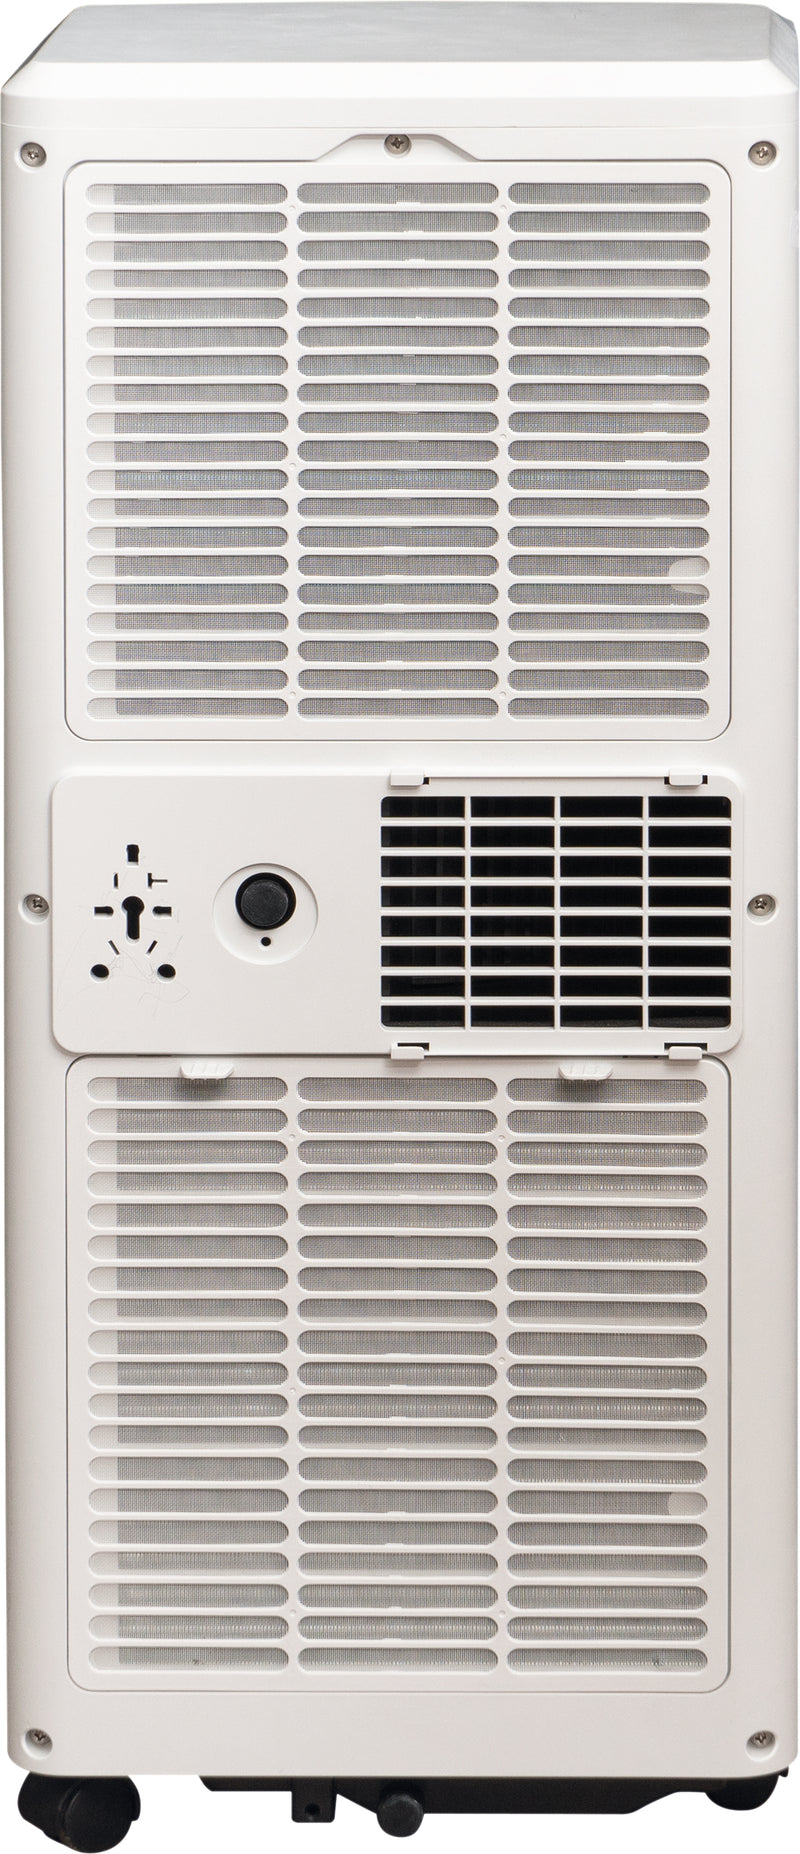 Prem-I-Air 8,000 BTU Portable Local Air Conditioner and Remote Control (EH1922)